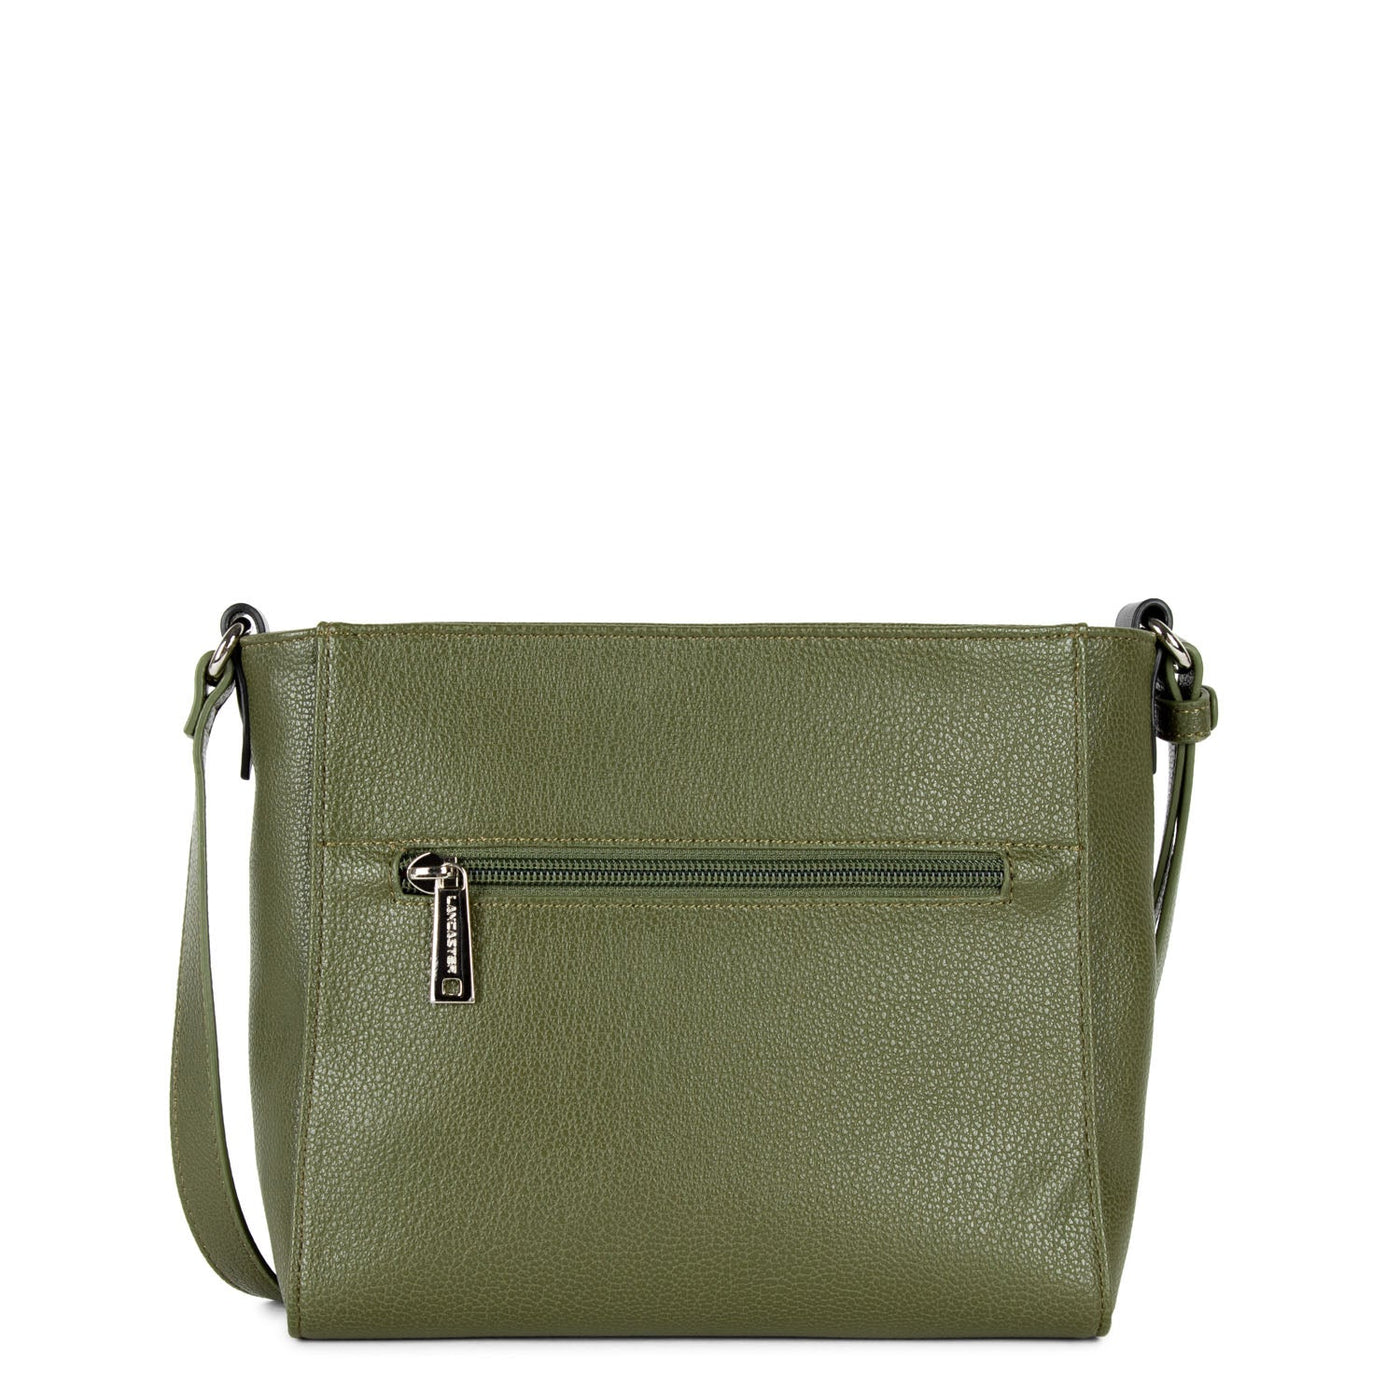 crossbody bag - maya #couleur_vert-militaire-fusil-noir